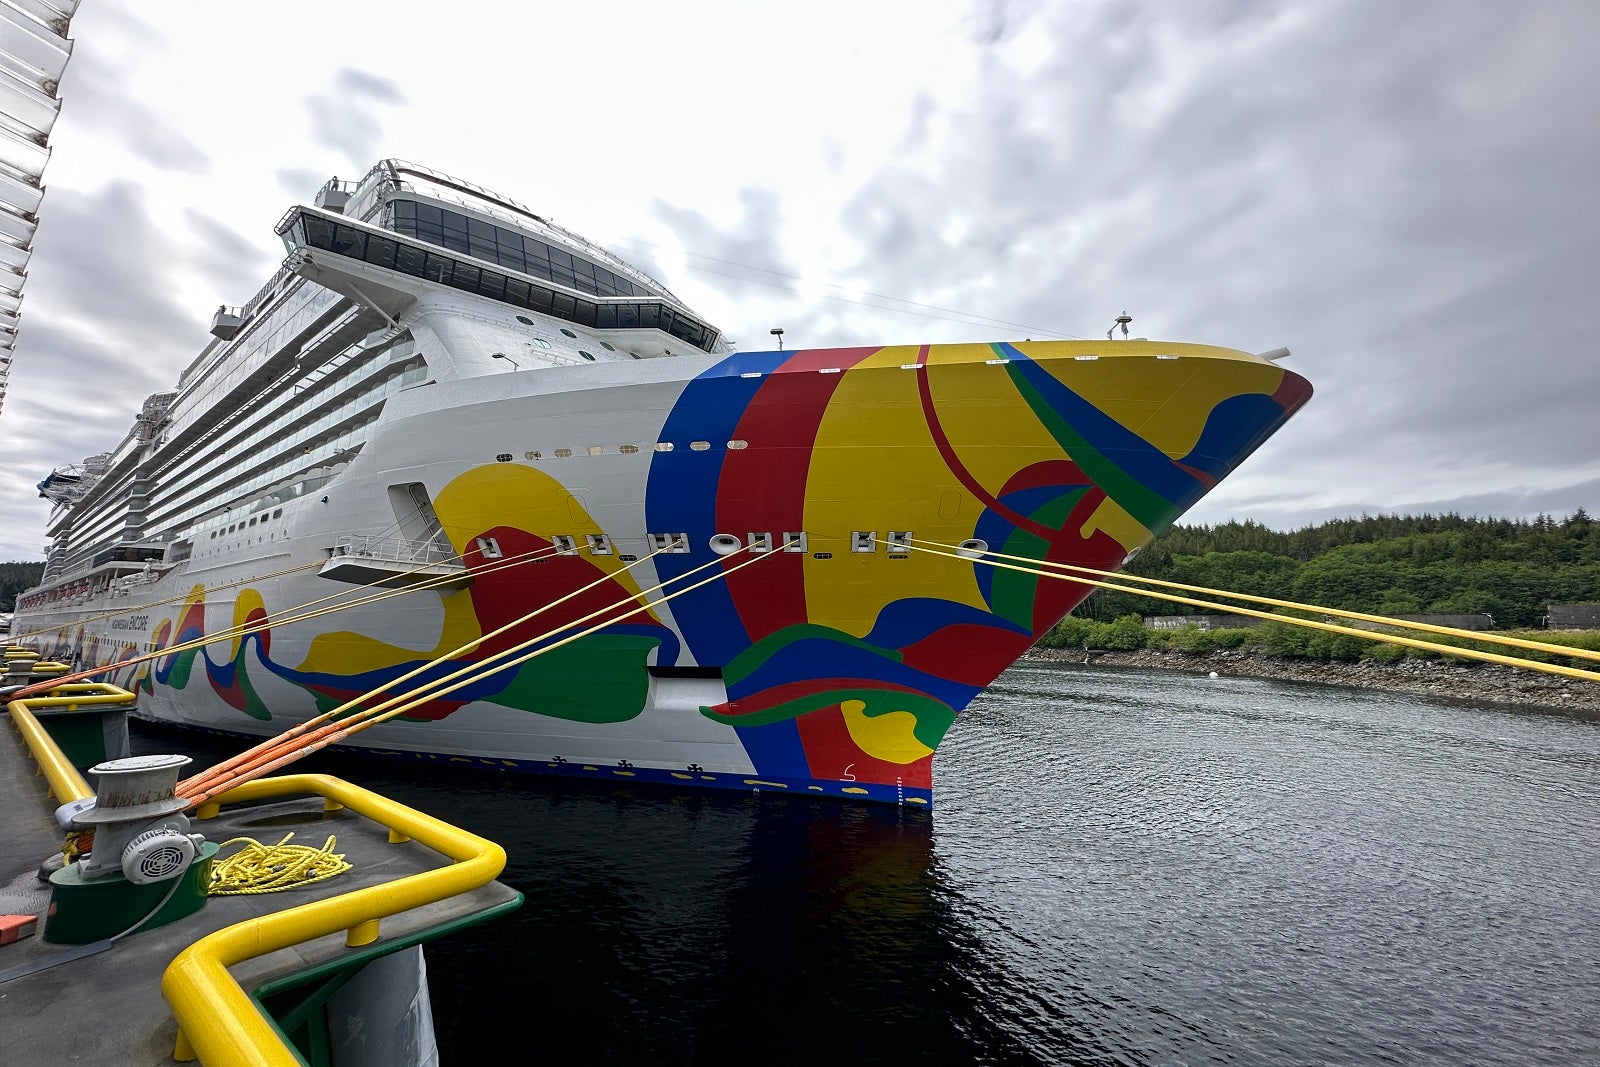 norwegian encore cruise ship